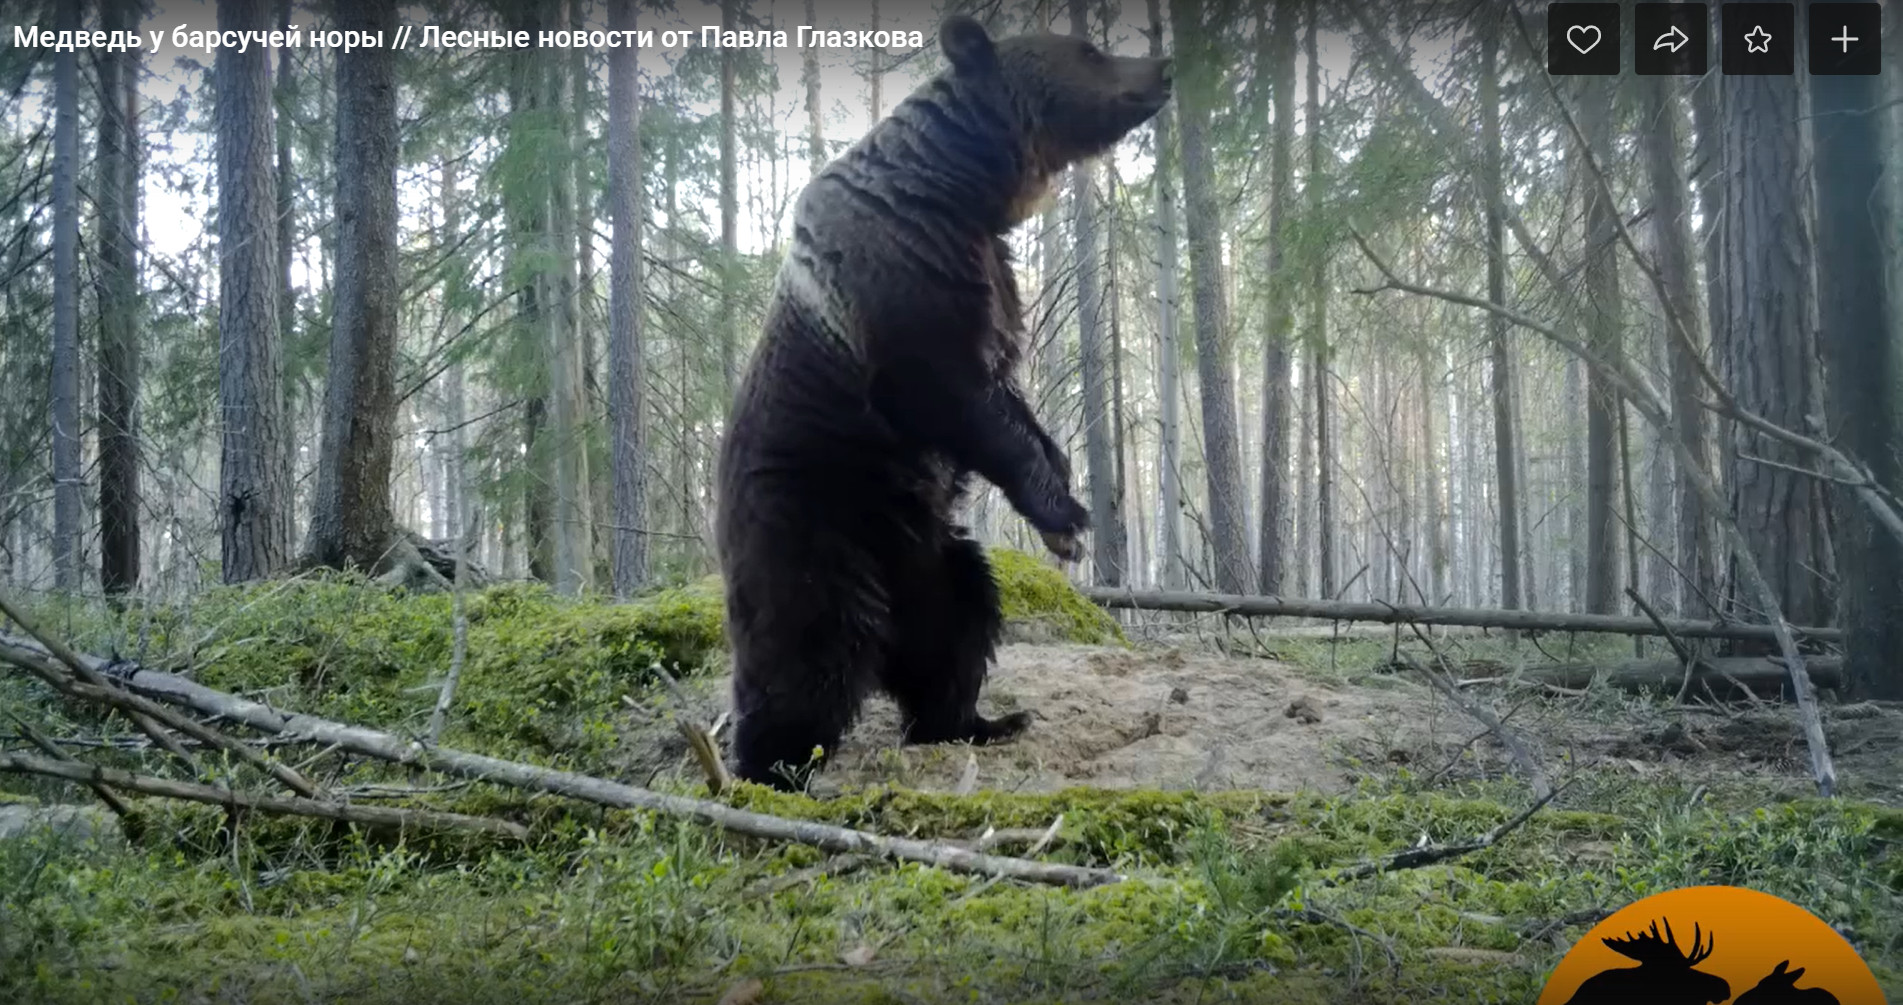 Ищите женщину. Медведи в Ленобласти забеспокоились, на видео — крупный самец встаёт на задние лапы